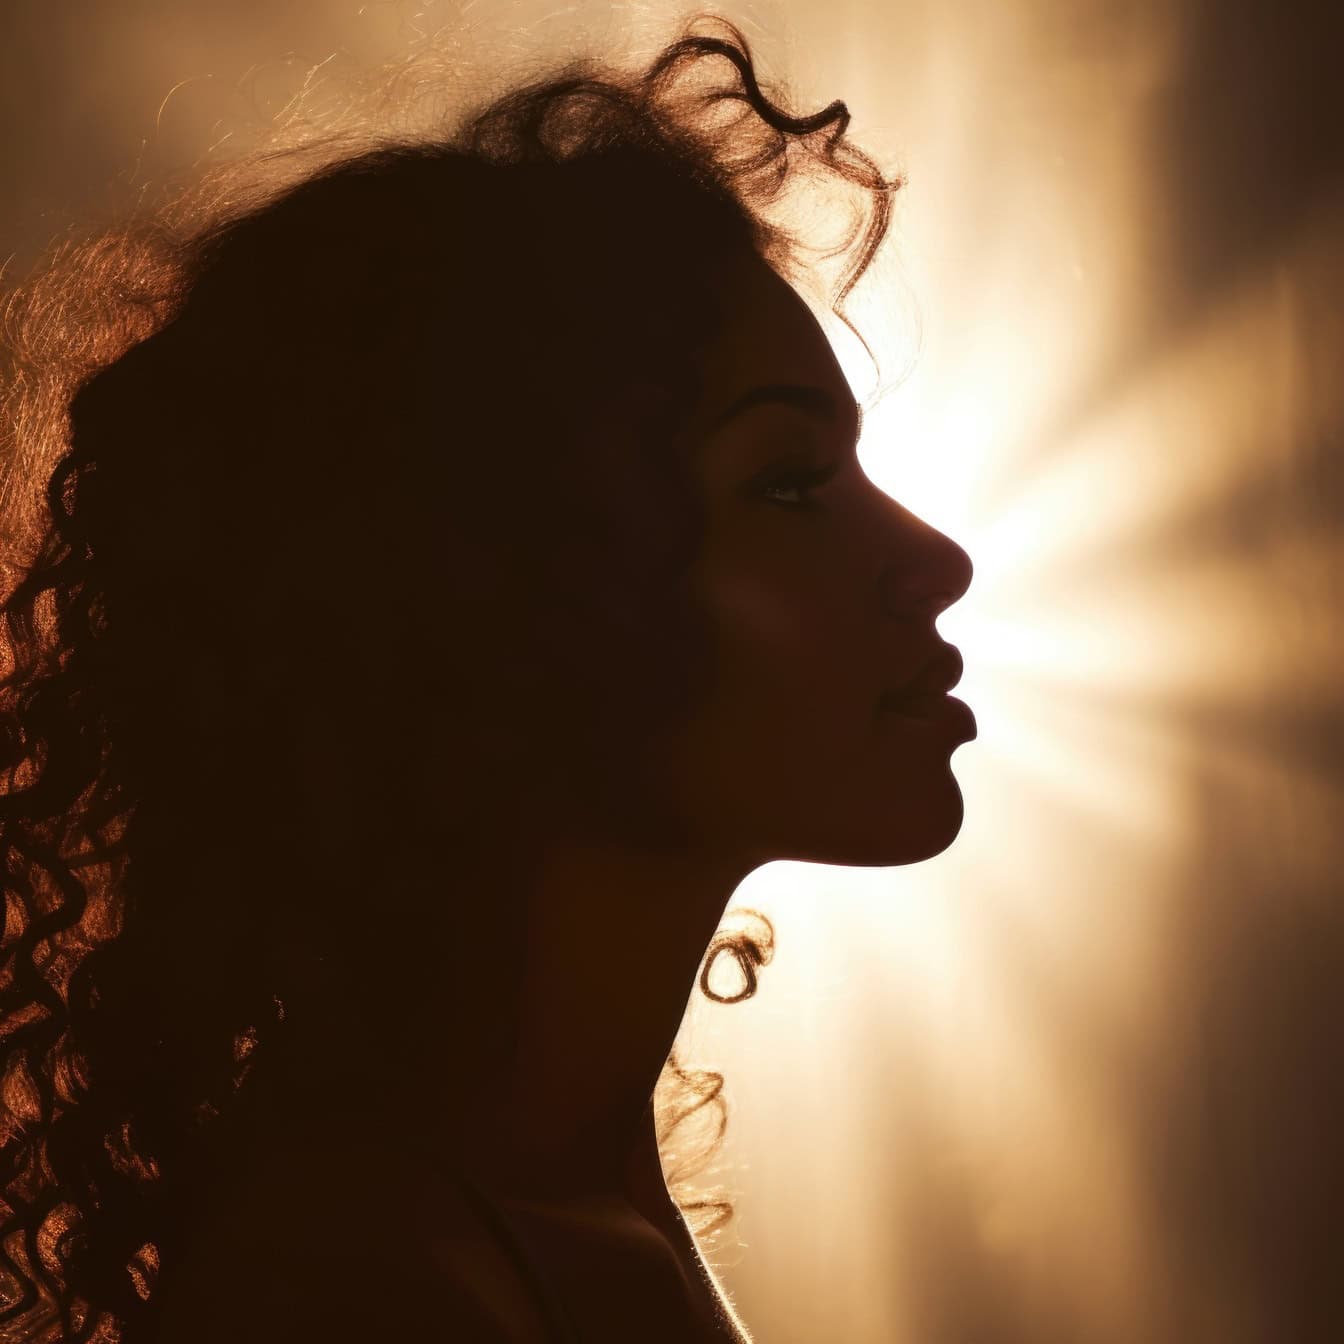 Profil einer Silhouette einer Frau, durch deren Haar die Sonne scheint